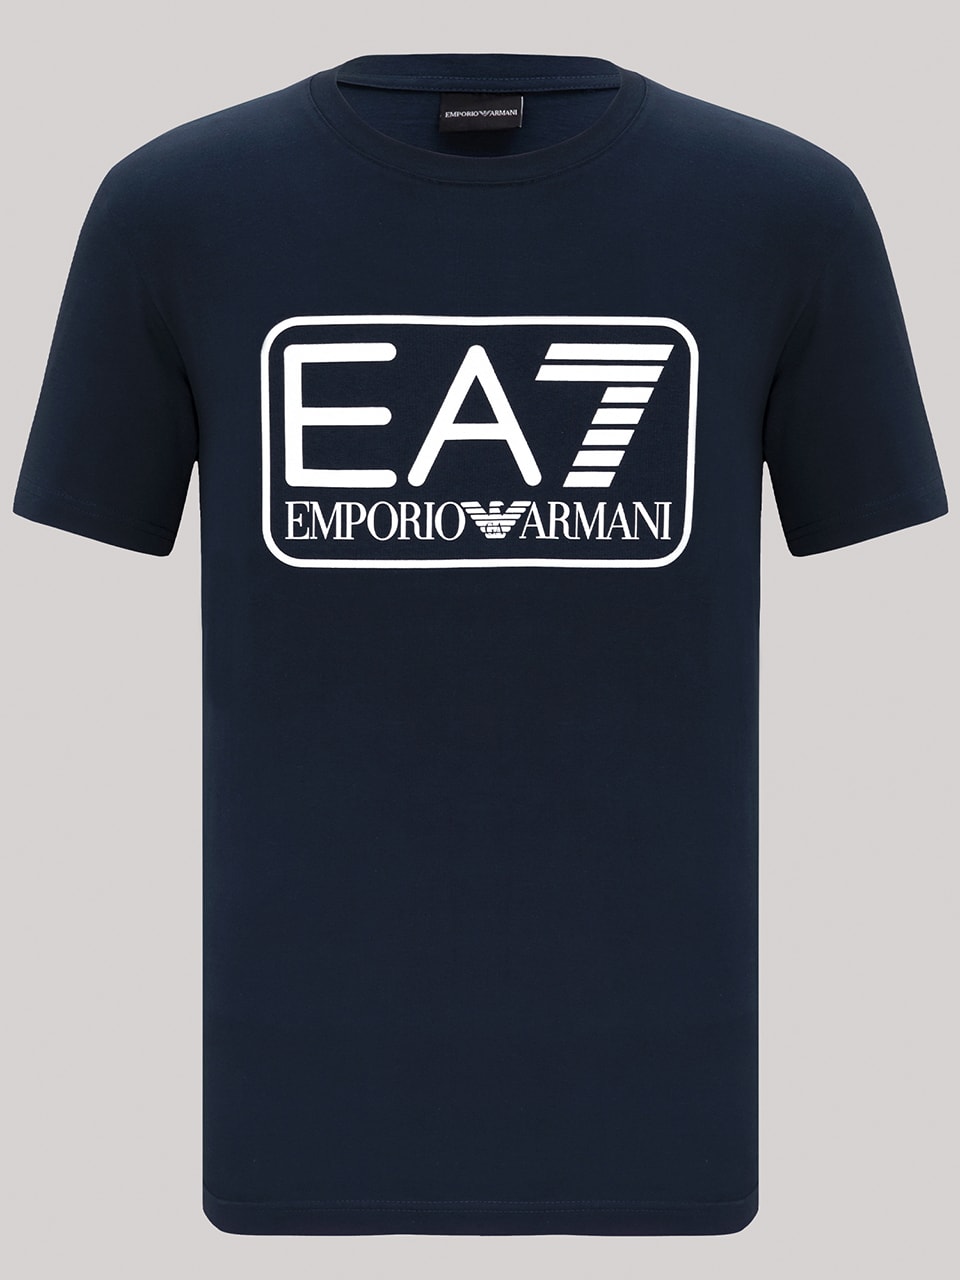 Emporio Armani EA7 t-shirt (7 av 11)